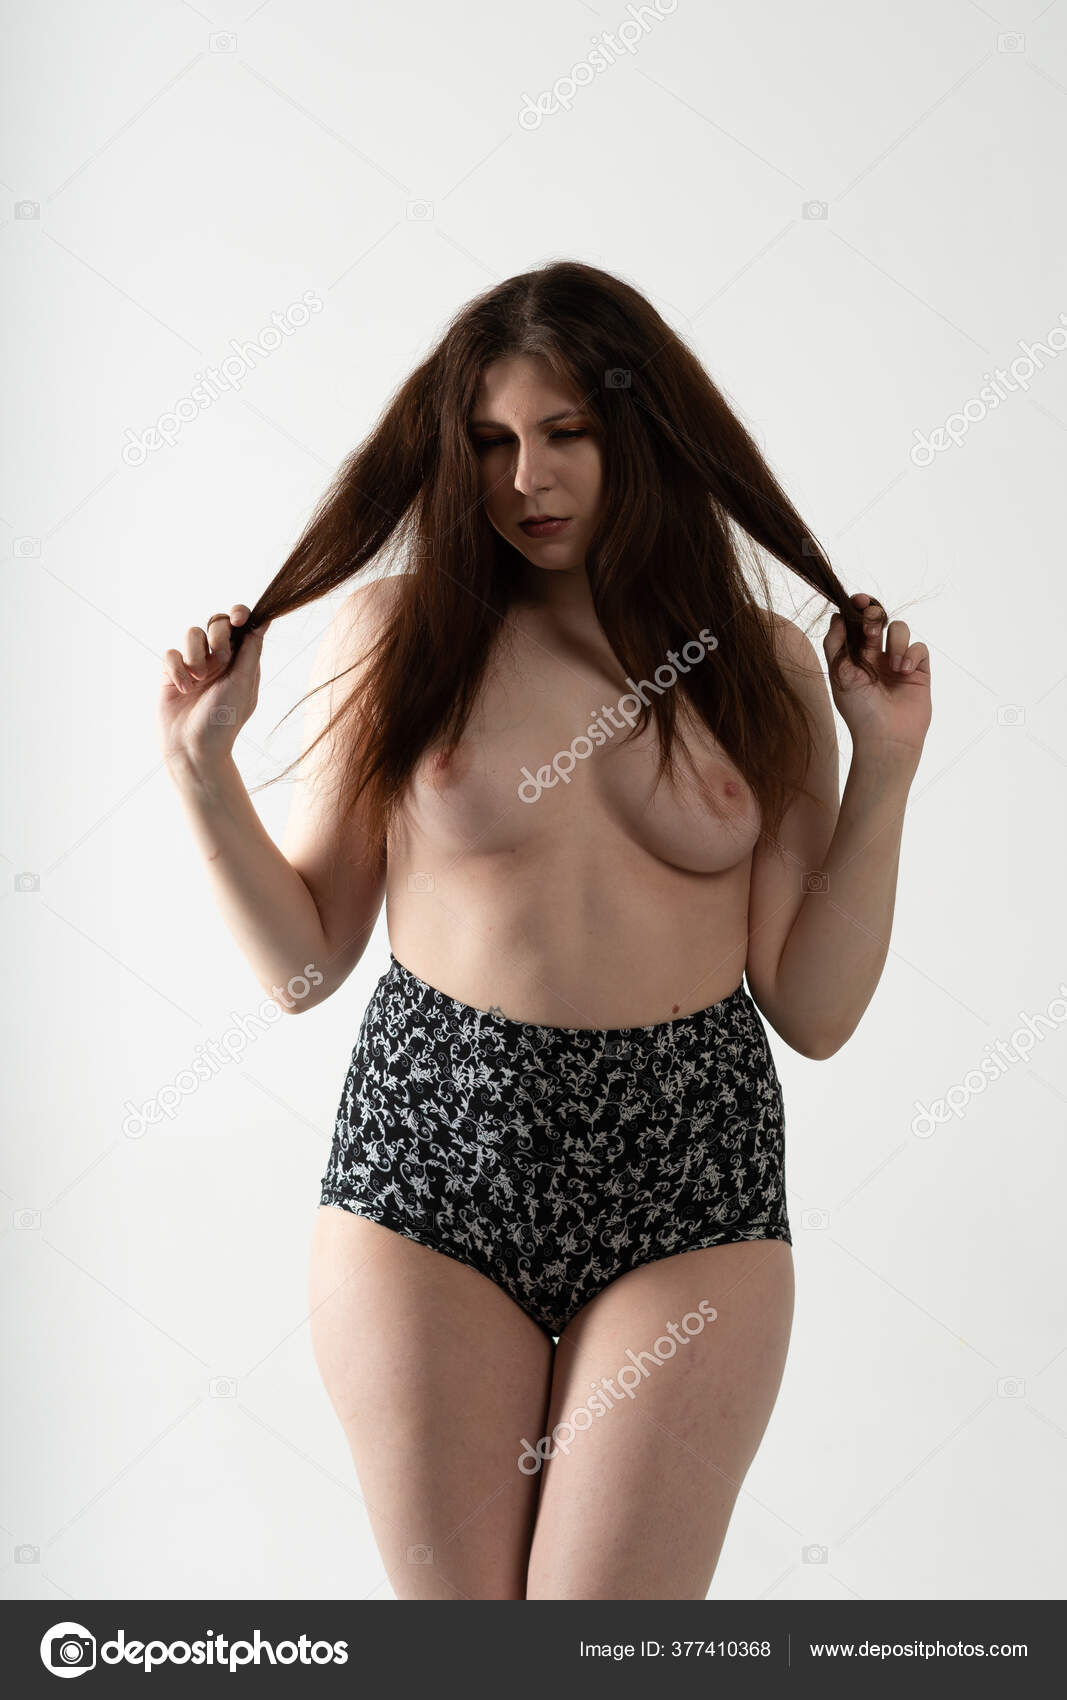 https://st3n.depositphotos.com/10086424/37741/i/1600/depositphotos_377410368-stock-photo-young-beautiful-girl-posing-nude.jpg